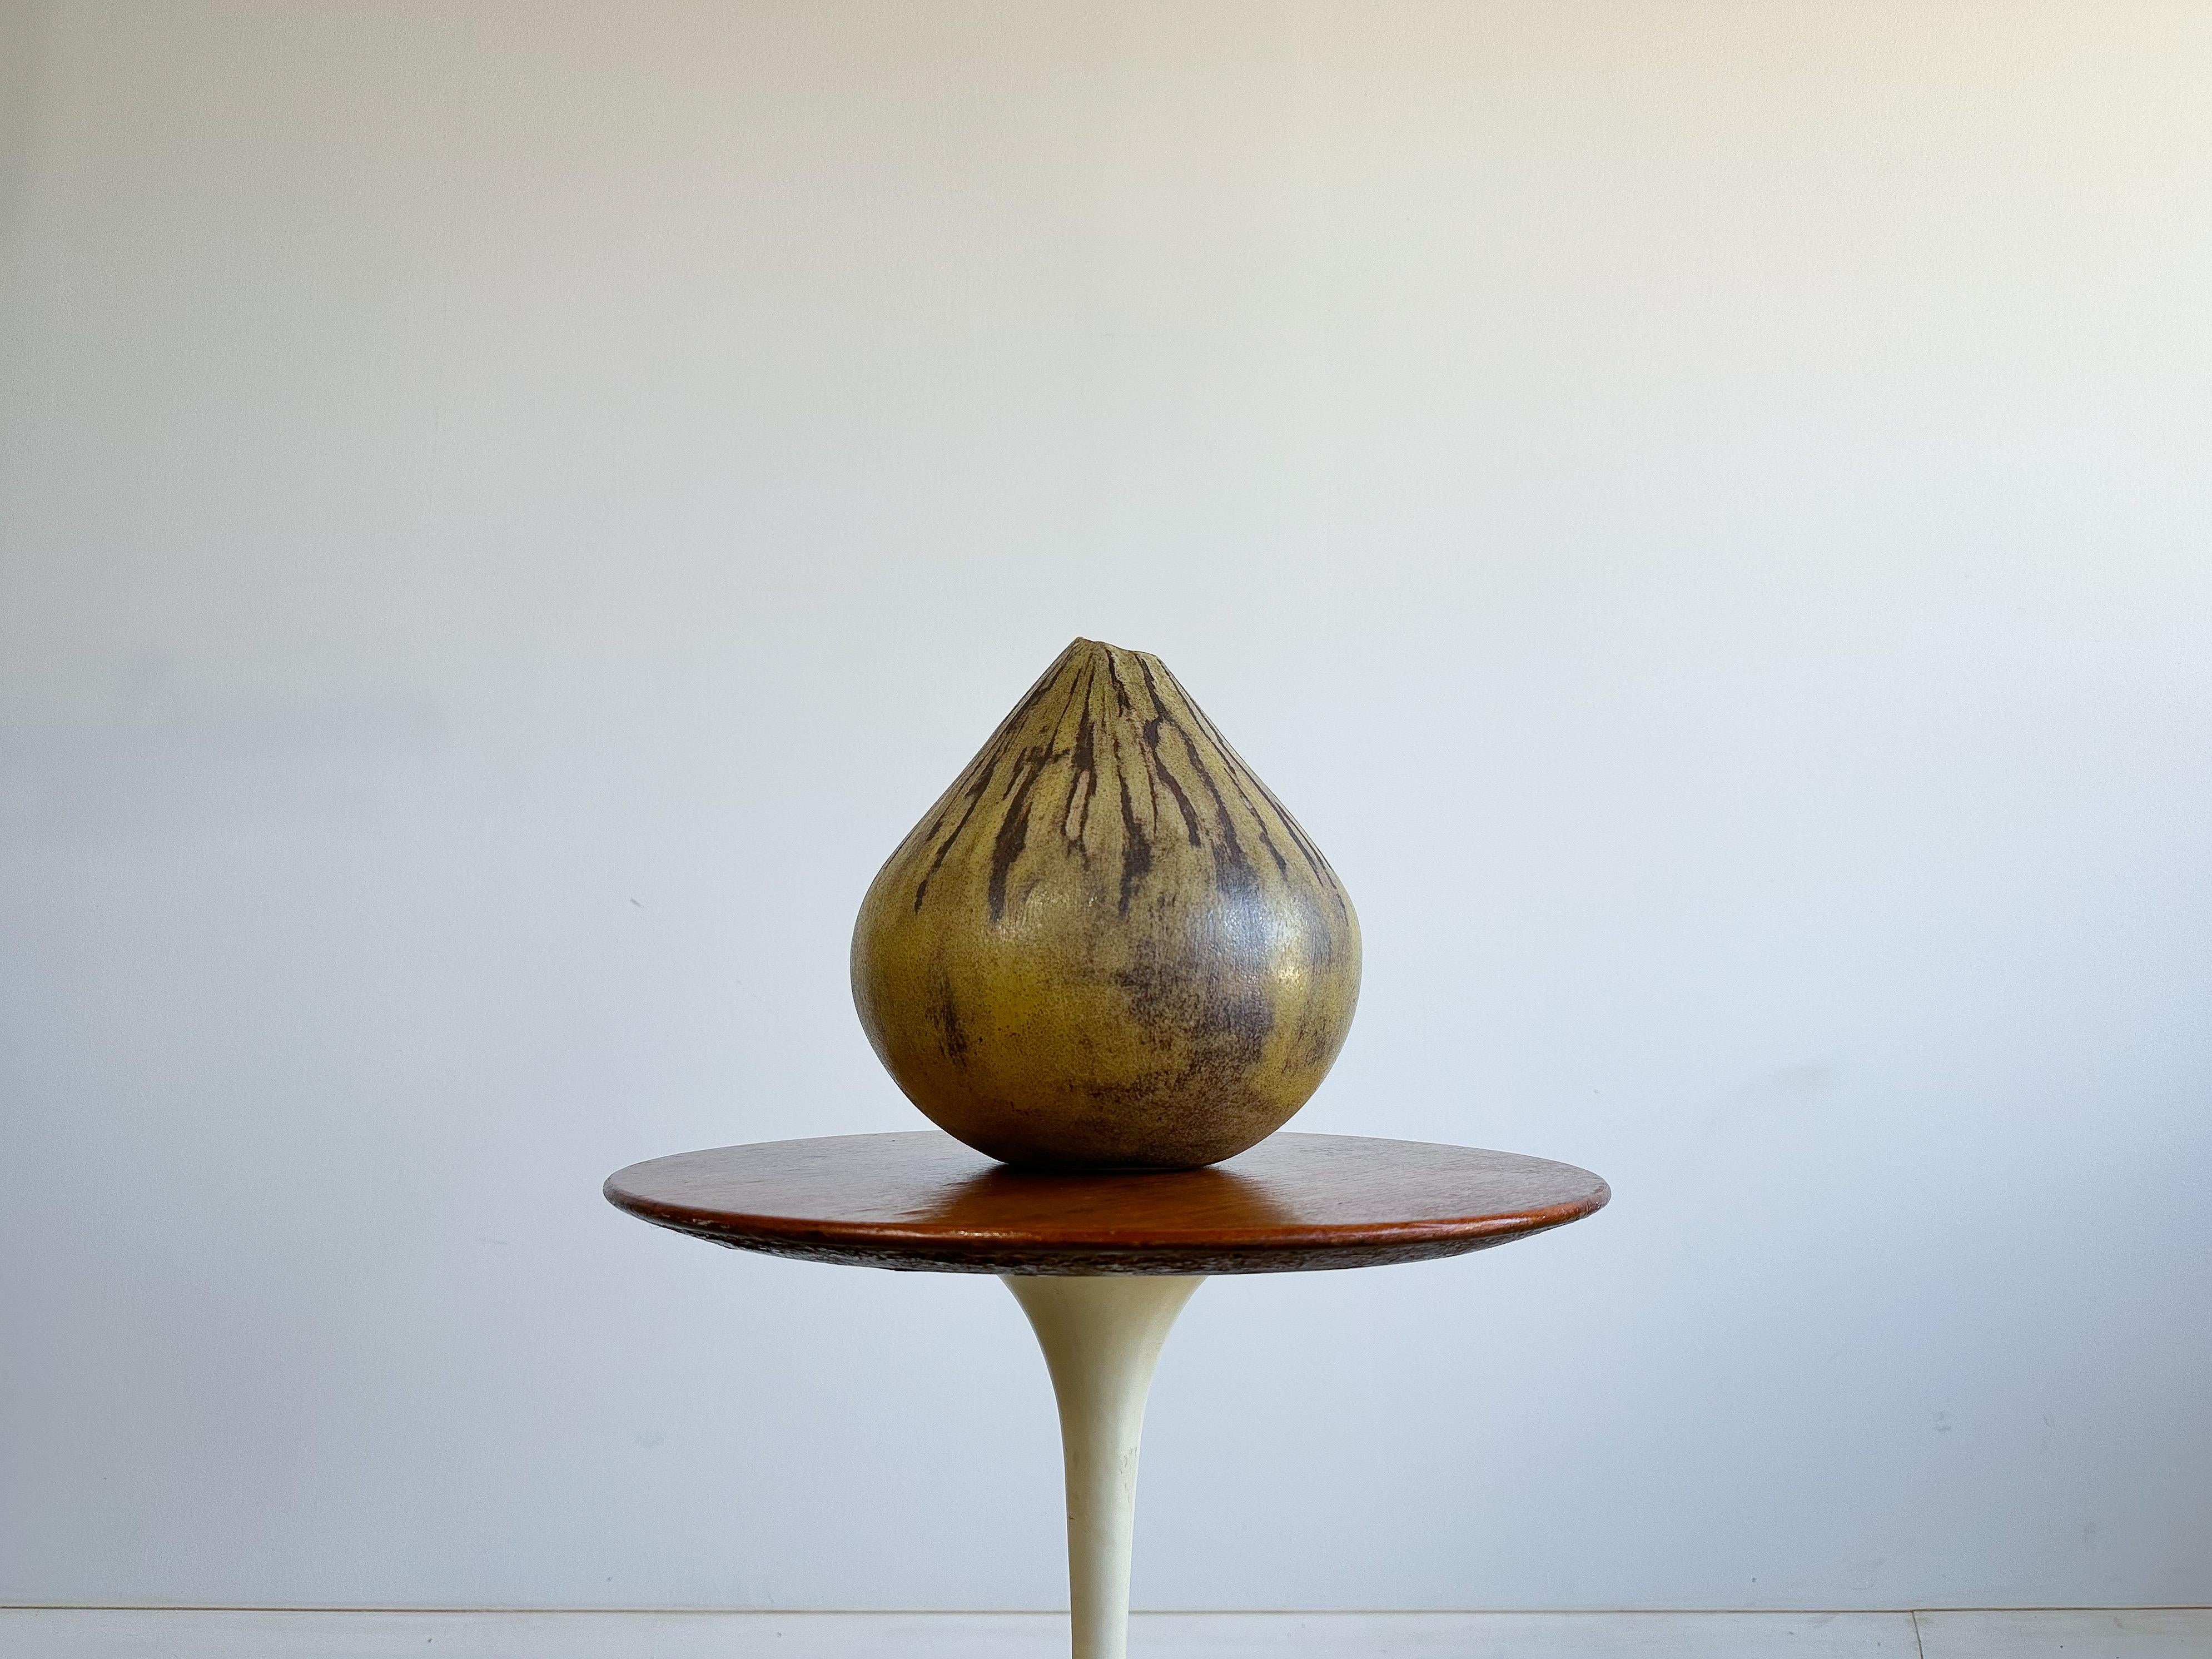 Un vase en céramique tourné à la main avec une belle forme et une belle glaçure. La glaçure mouchetée est d'une couleur et d'une texture magnifiques. Une belle pièce d'accent qui s'intègre dans une variété de décors.

Signé D. Murray, 1971.